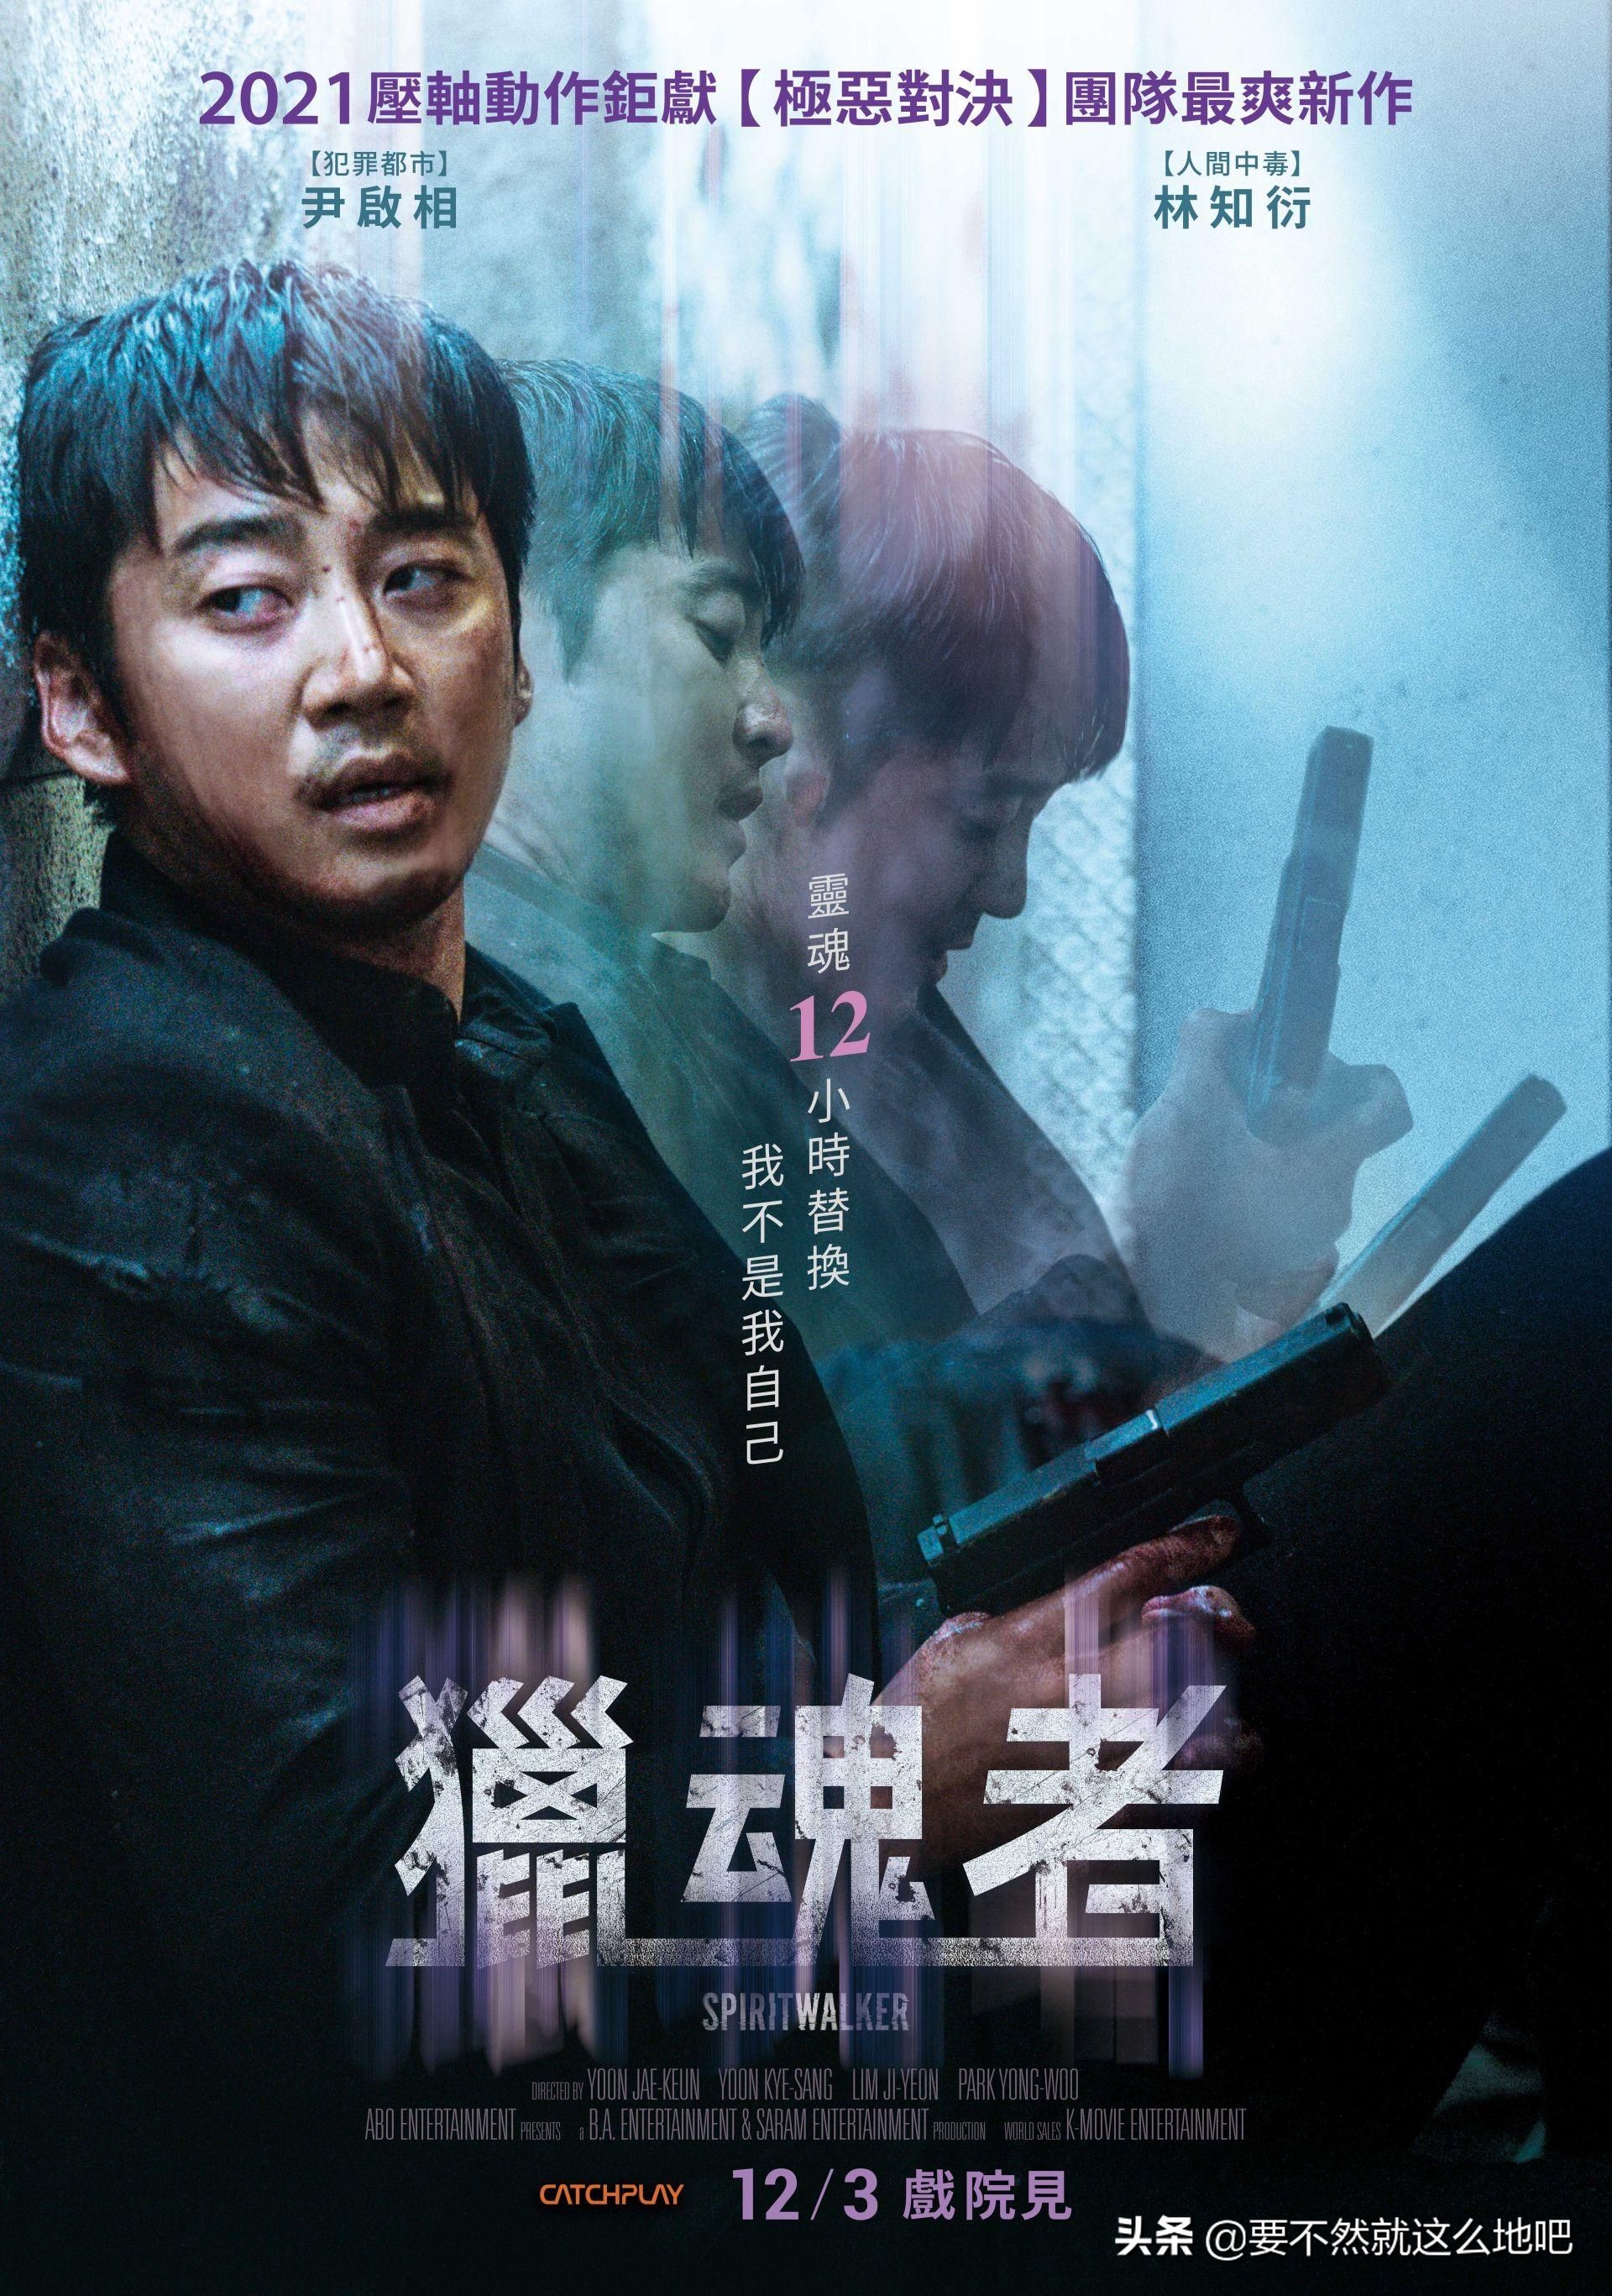 《灵魂脱离者》：韩国悬疑动作电影，题材独特、剧情紧凑，推荐